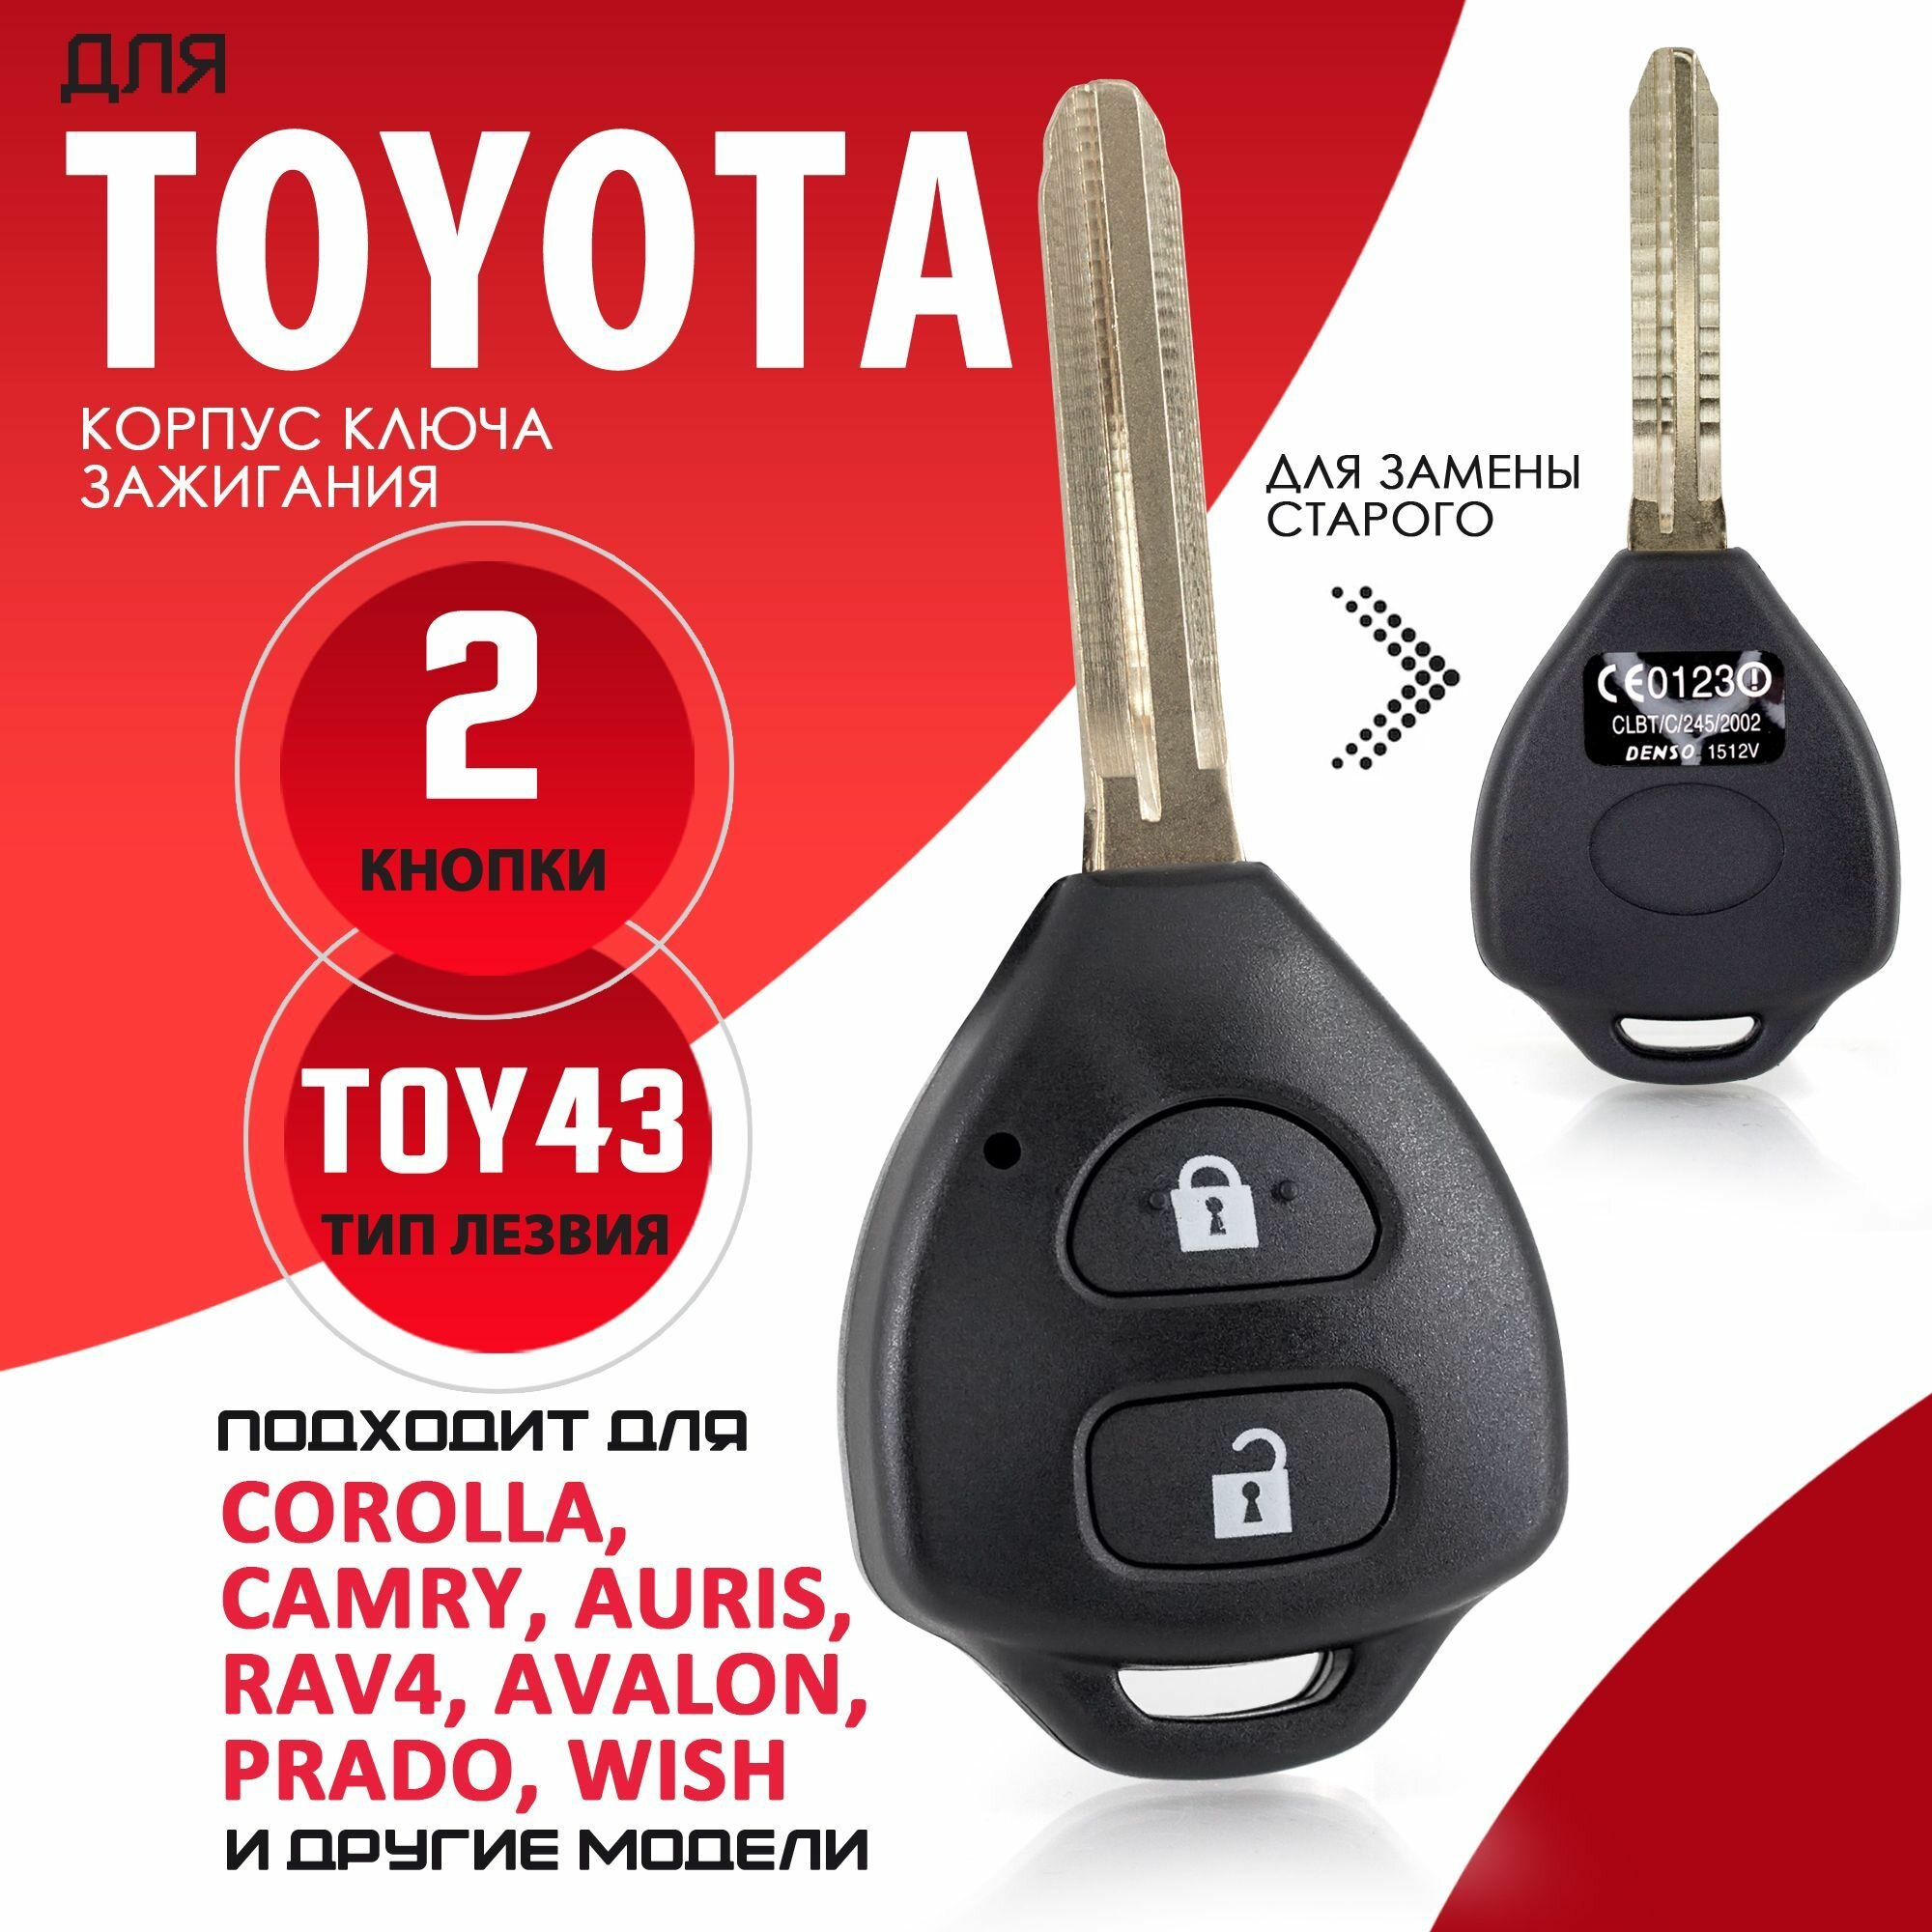 Корпус ключа зажигания Toyota / Тойота лезвие TOY43 - 2 кнопки / Брелок зажигания с лезвием